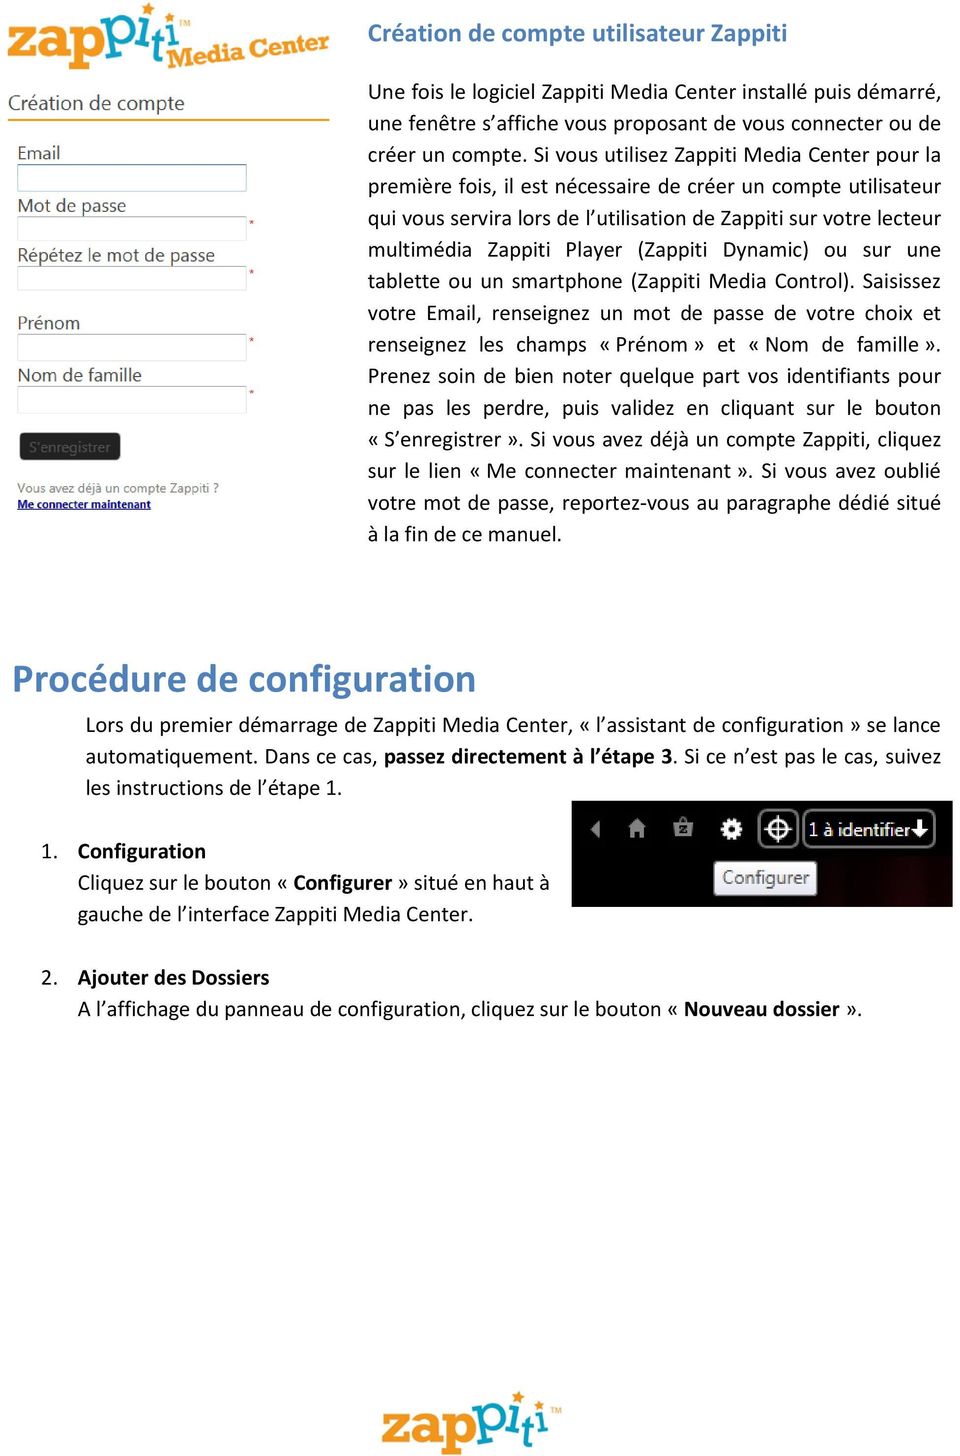 Player (Zappiti Dynamic) ou sur une tablette ou un smartphone (Zappiti Media Control).